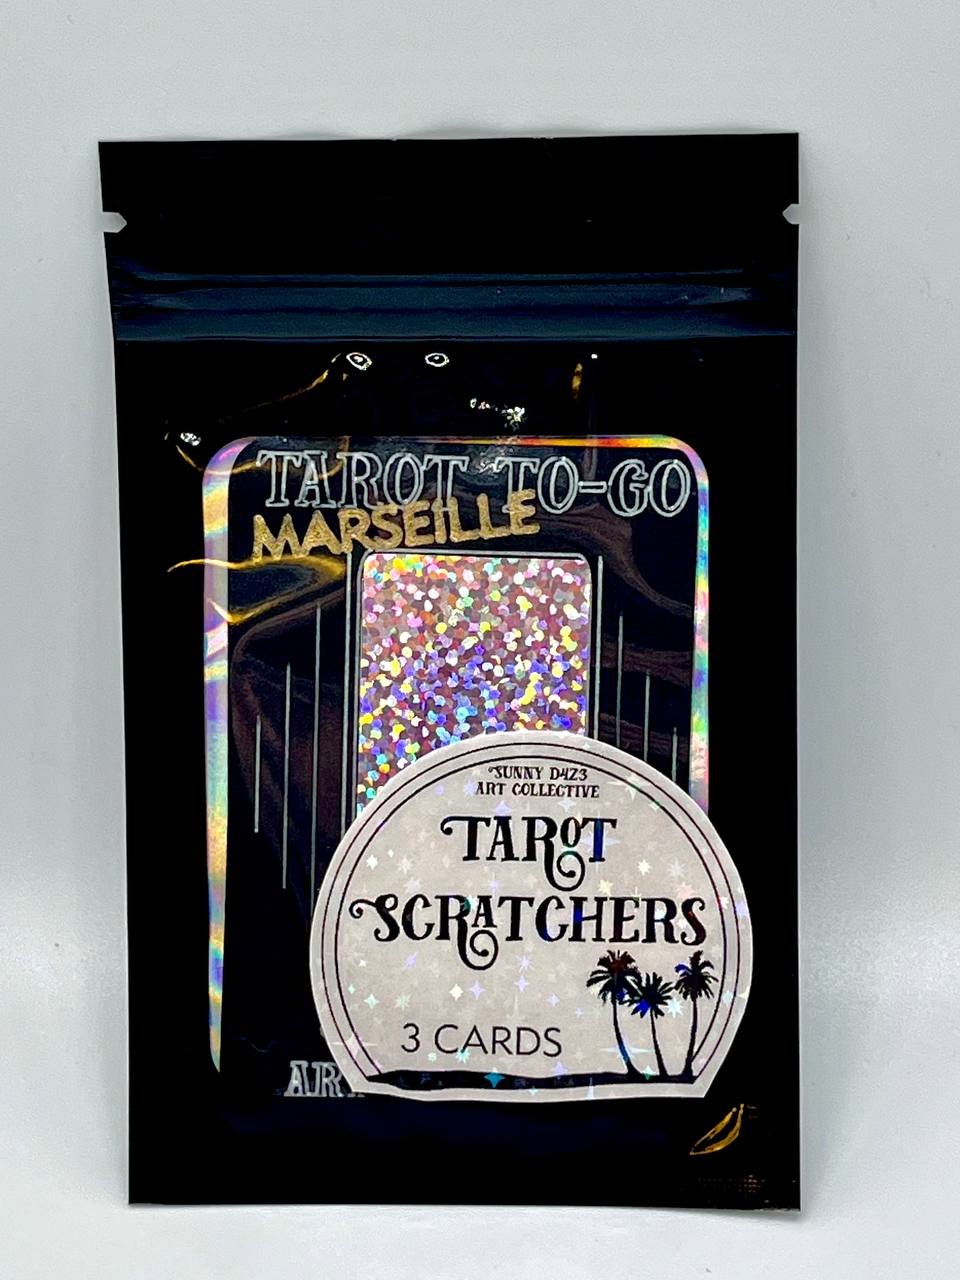 scratchers- tarot to go tarot scratch off - 3 card pack - MARSEILLE